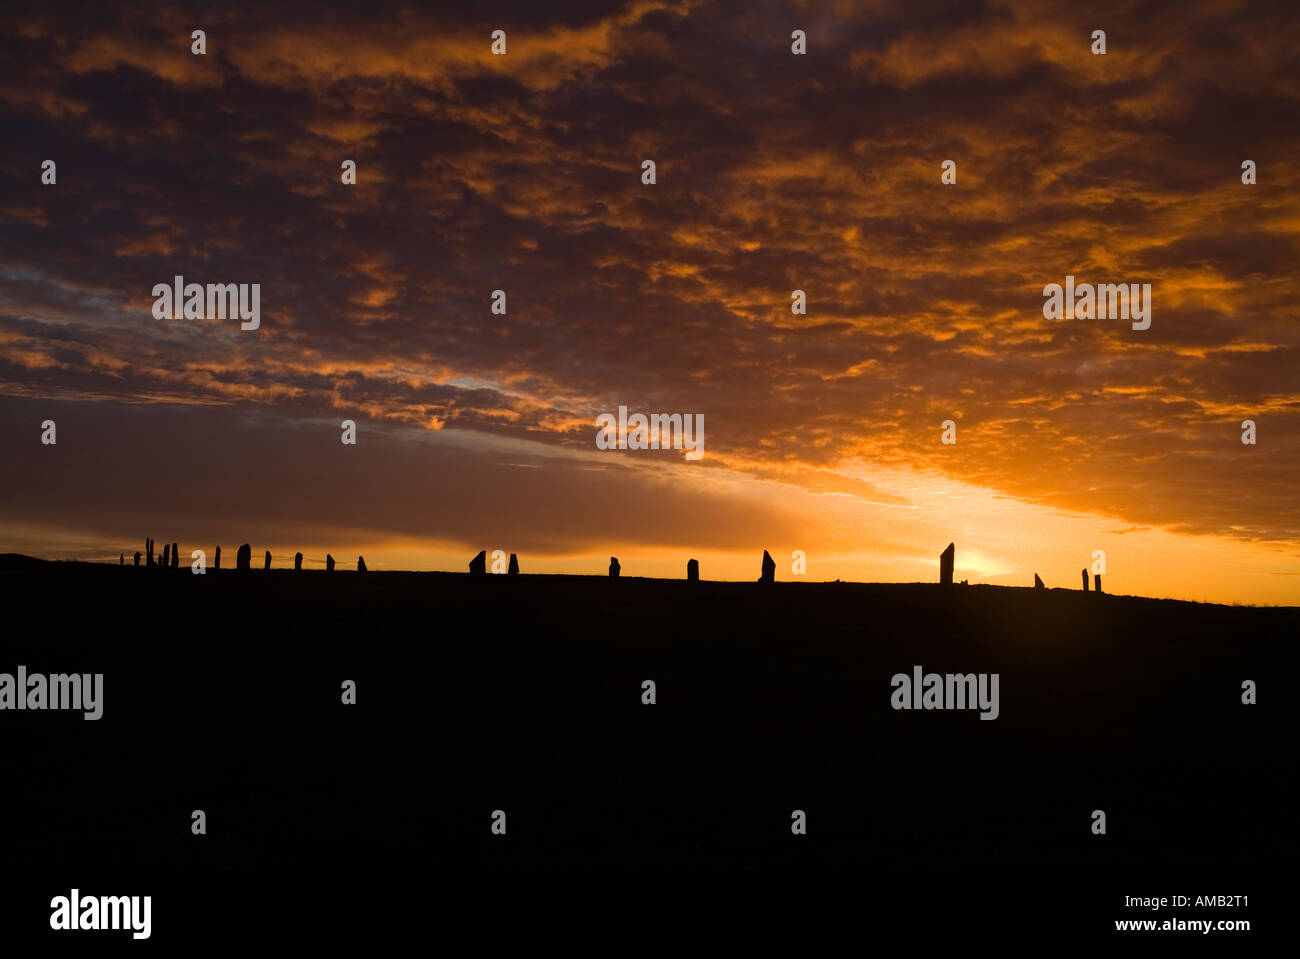 dh Neolitico in piedi pietre ANELLO DI BRODGAR ORKNEY arancione tramonto cielo nuvoloso crepuscolo scottish siti storici regno unito henge cerchio scozia sito unesco Foto Stock